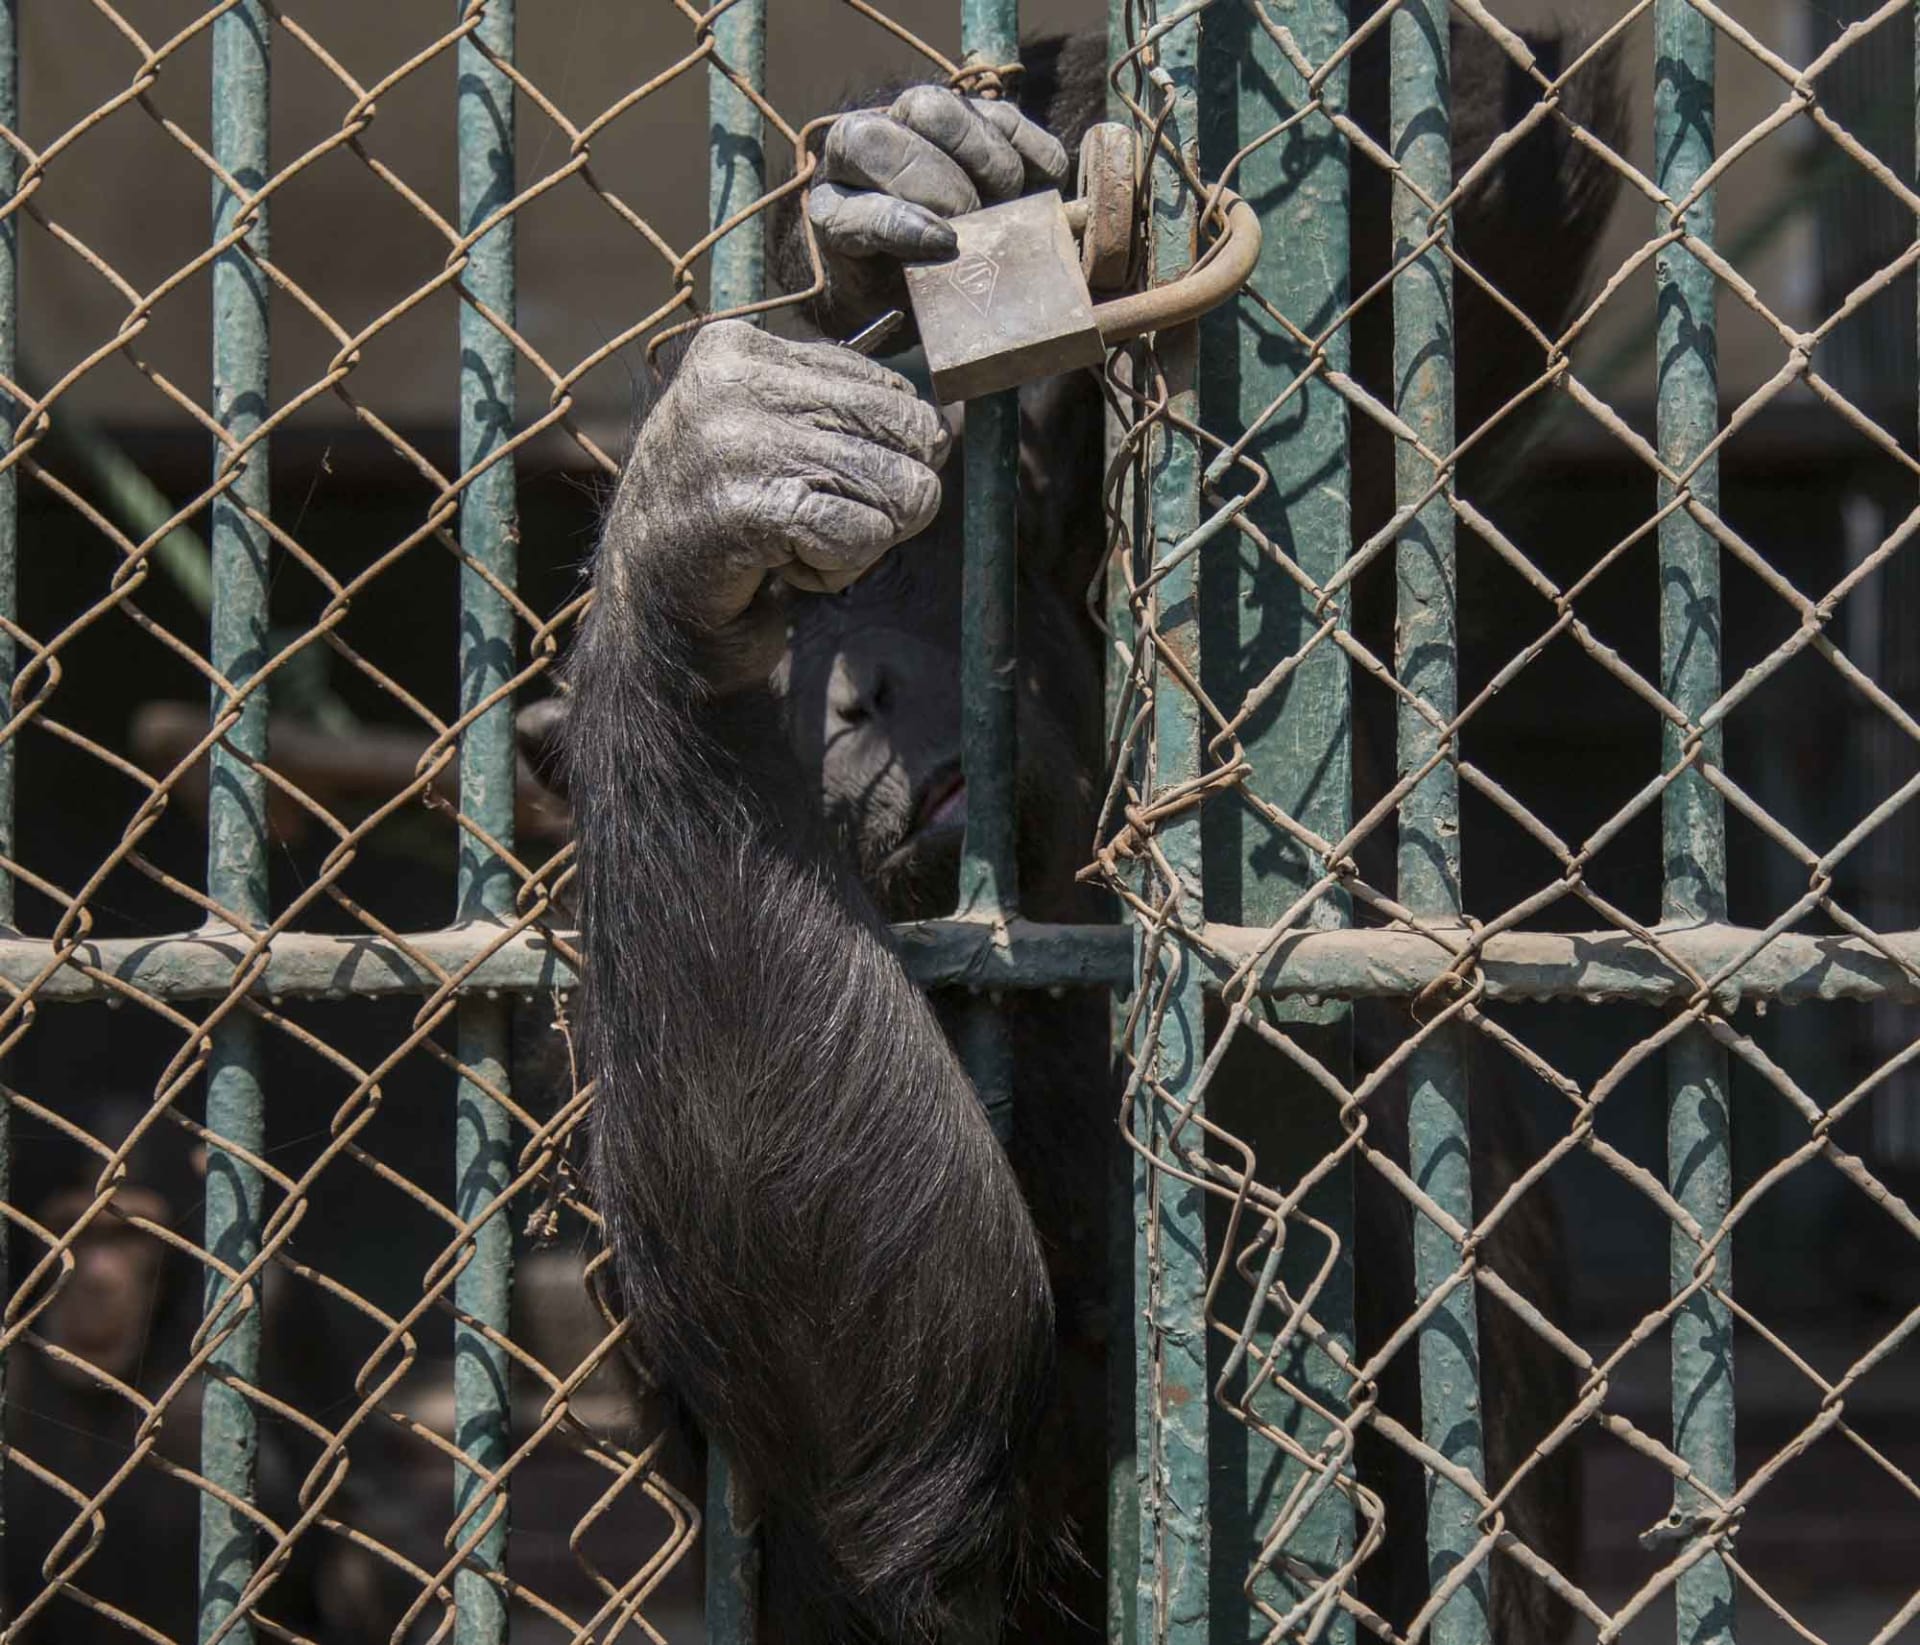 بعد أن تغلق حديقة الحيوان بالجيزة أبوابها.. إليك القصص التي لا يعرفها إلا الحراس والحيوانات